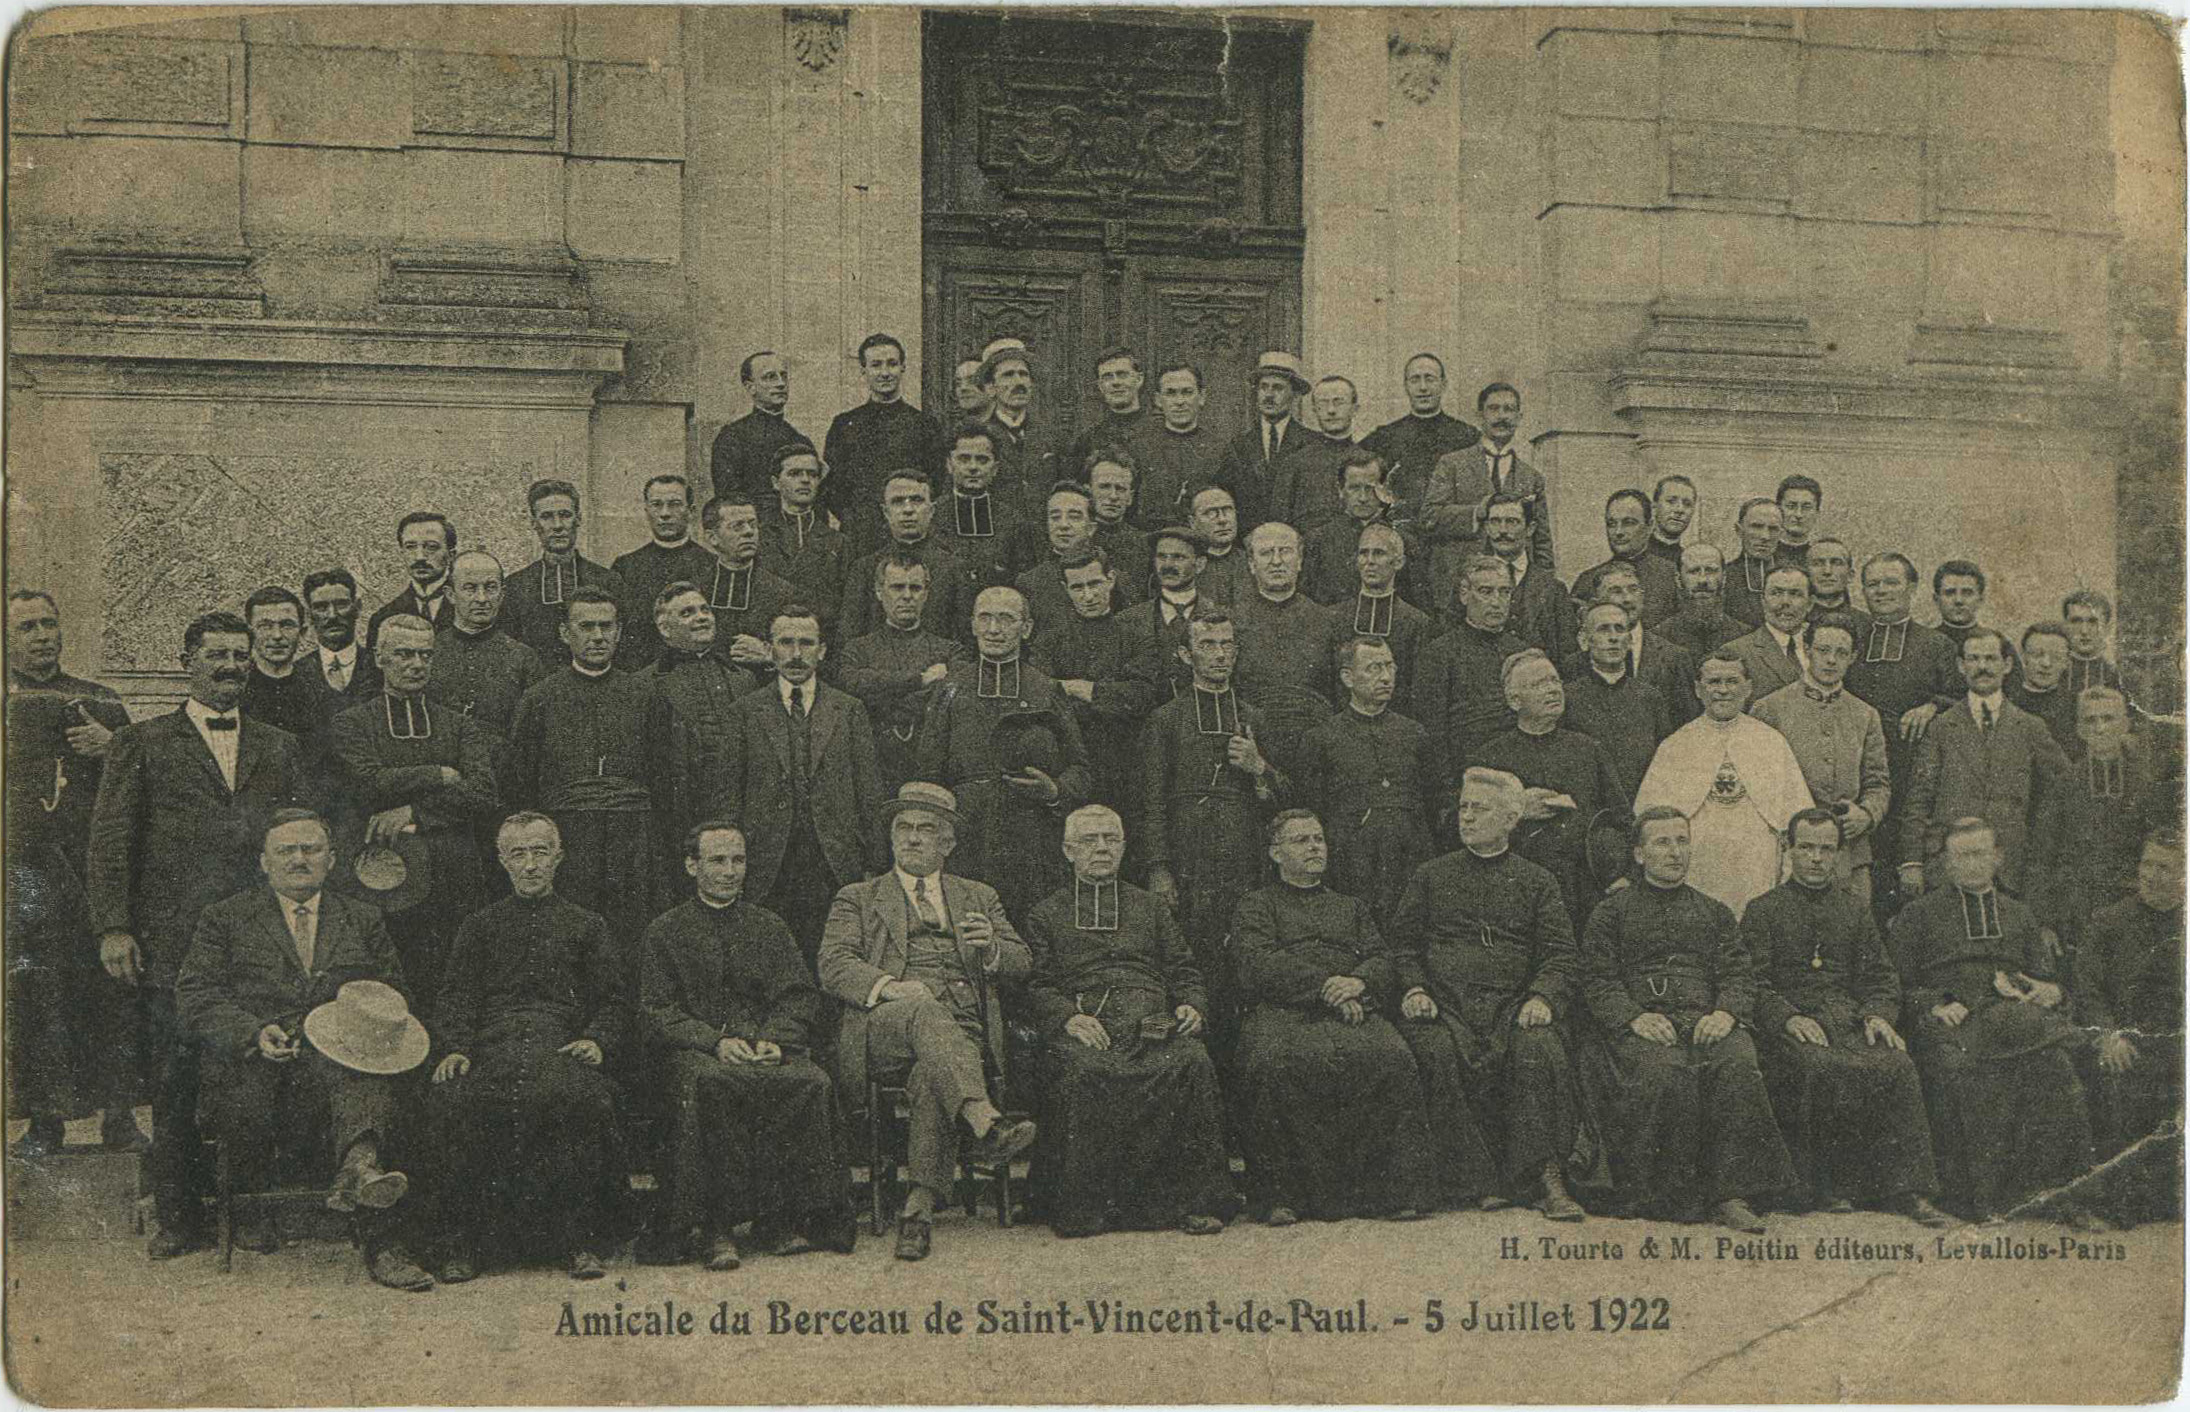 Saint-Vincent-de-Paul - Amicale du Berceau de Saint-Vincent-de-Paul - 5 Juillet 1922